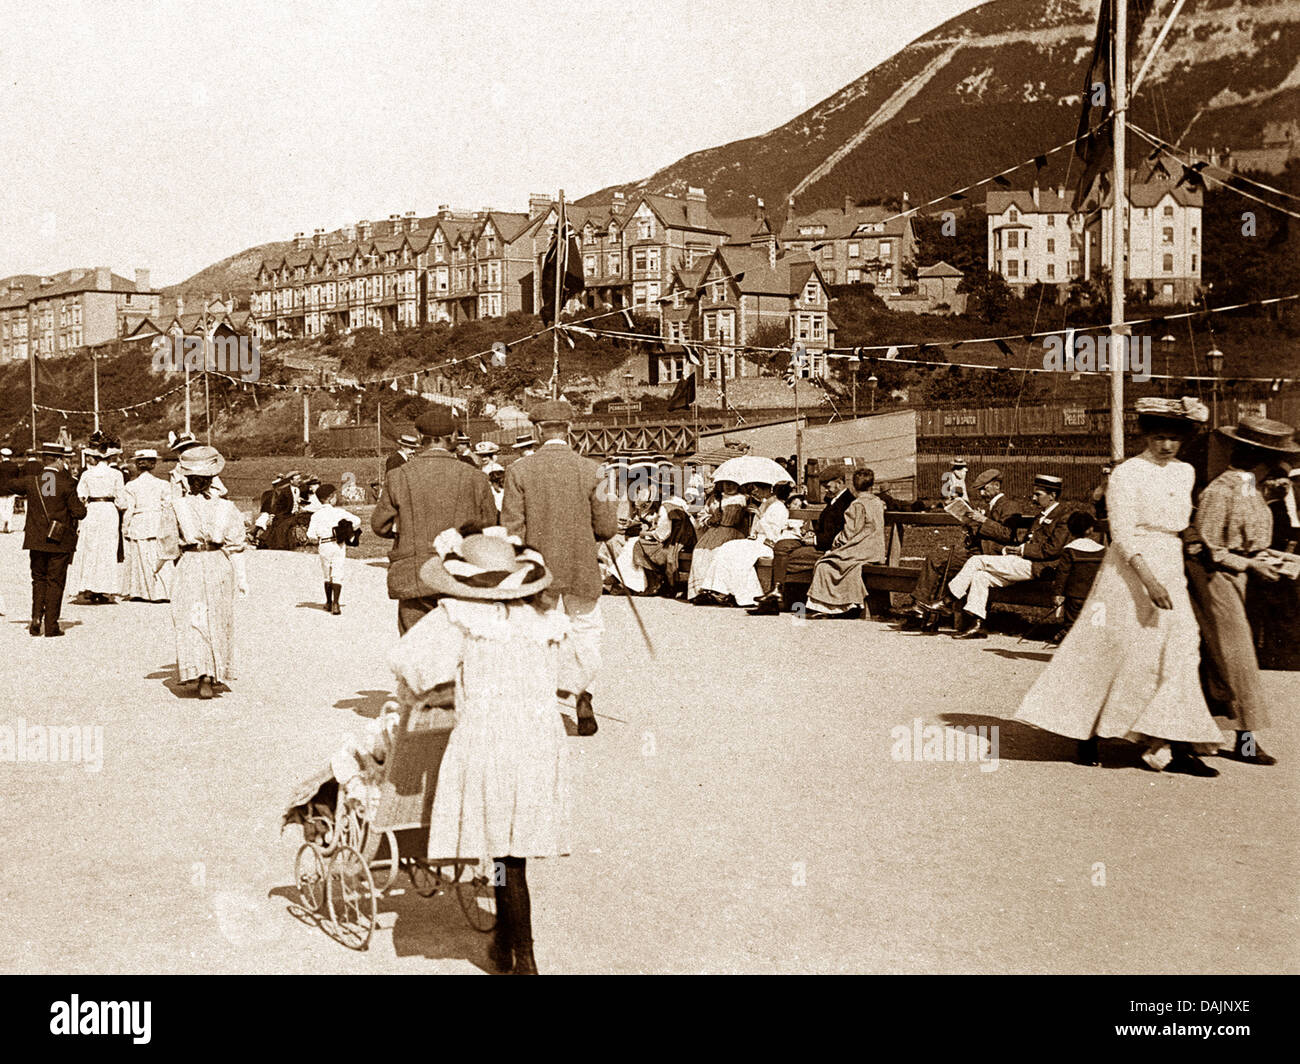 Penmaenmawr Promenade early 1900s Stock Photo